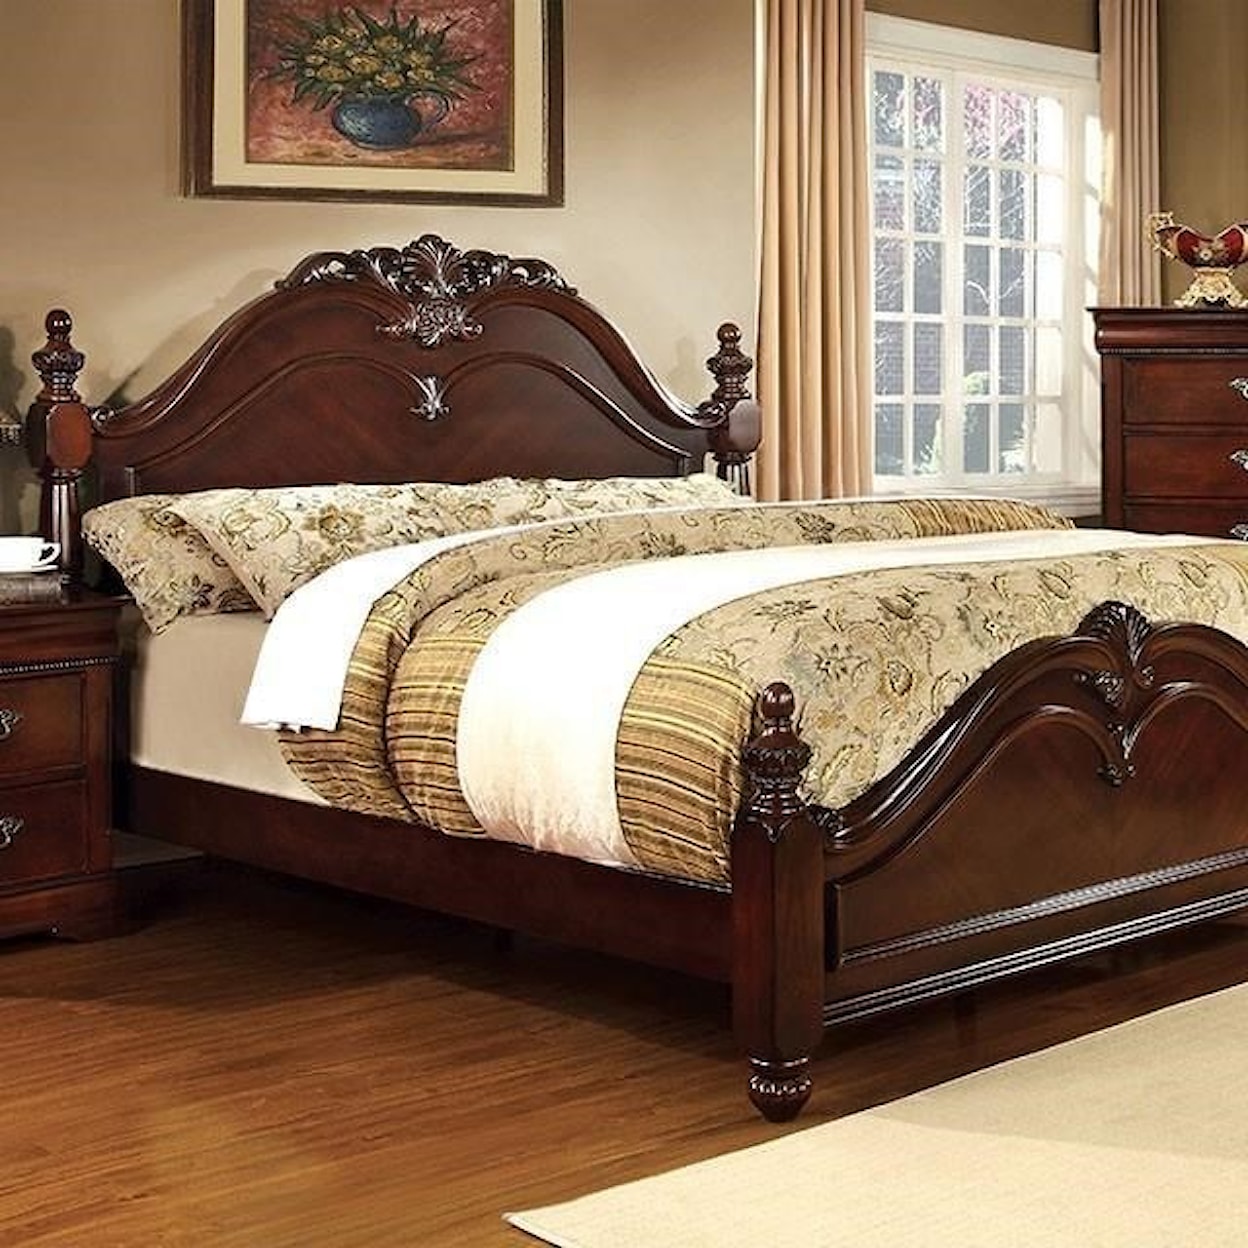 Furniture of America Mandura Queen Poster Bed